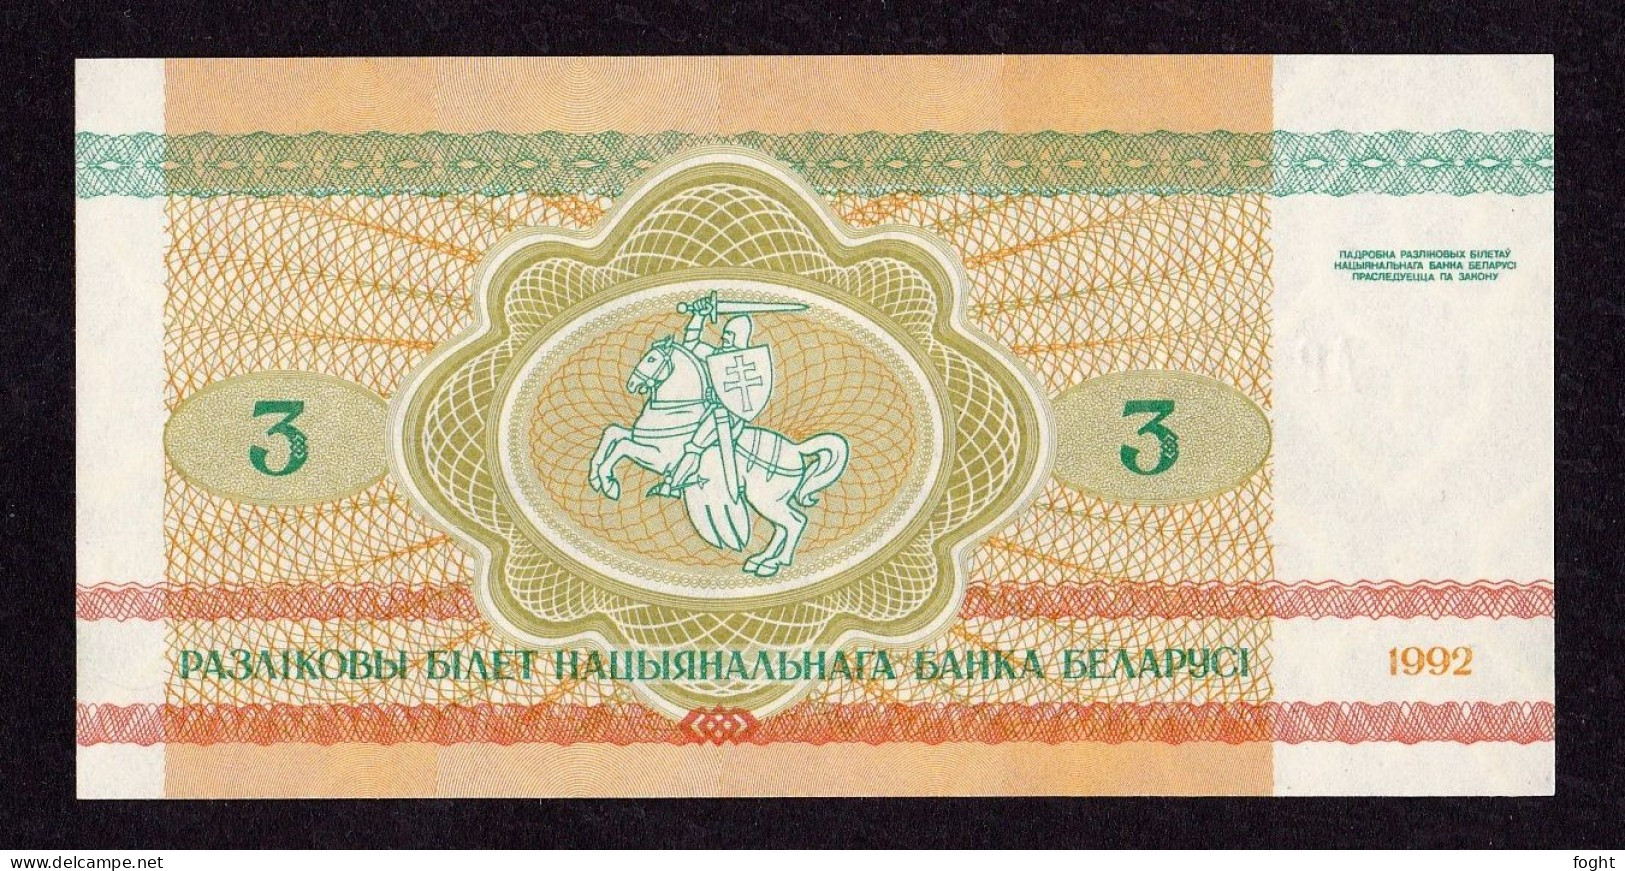 1992 АР Belarus Belarus National Bank Banknote 3 Rublei,P#3 - Belarus